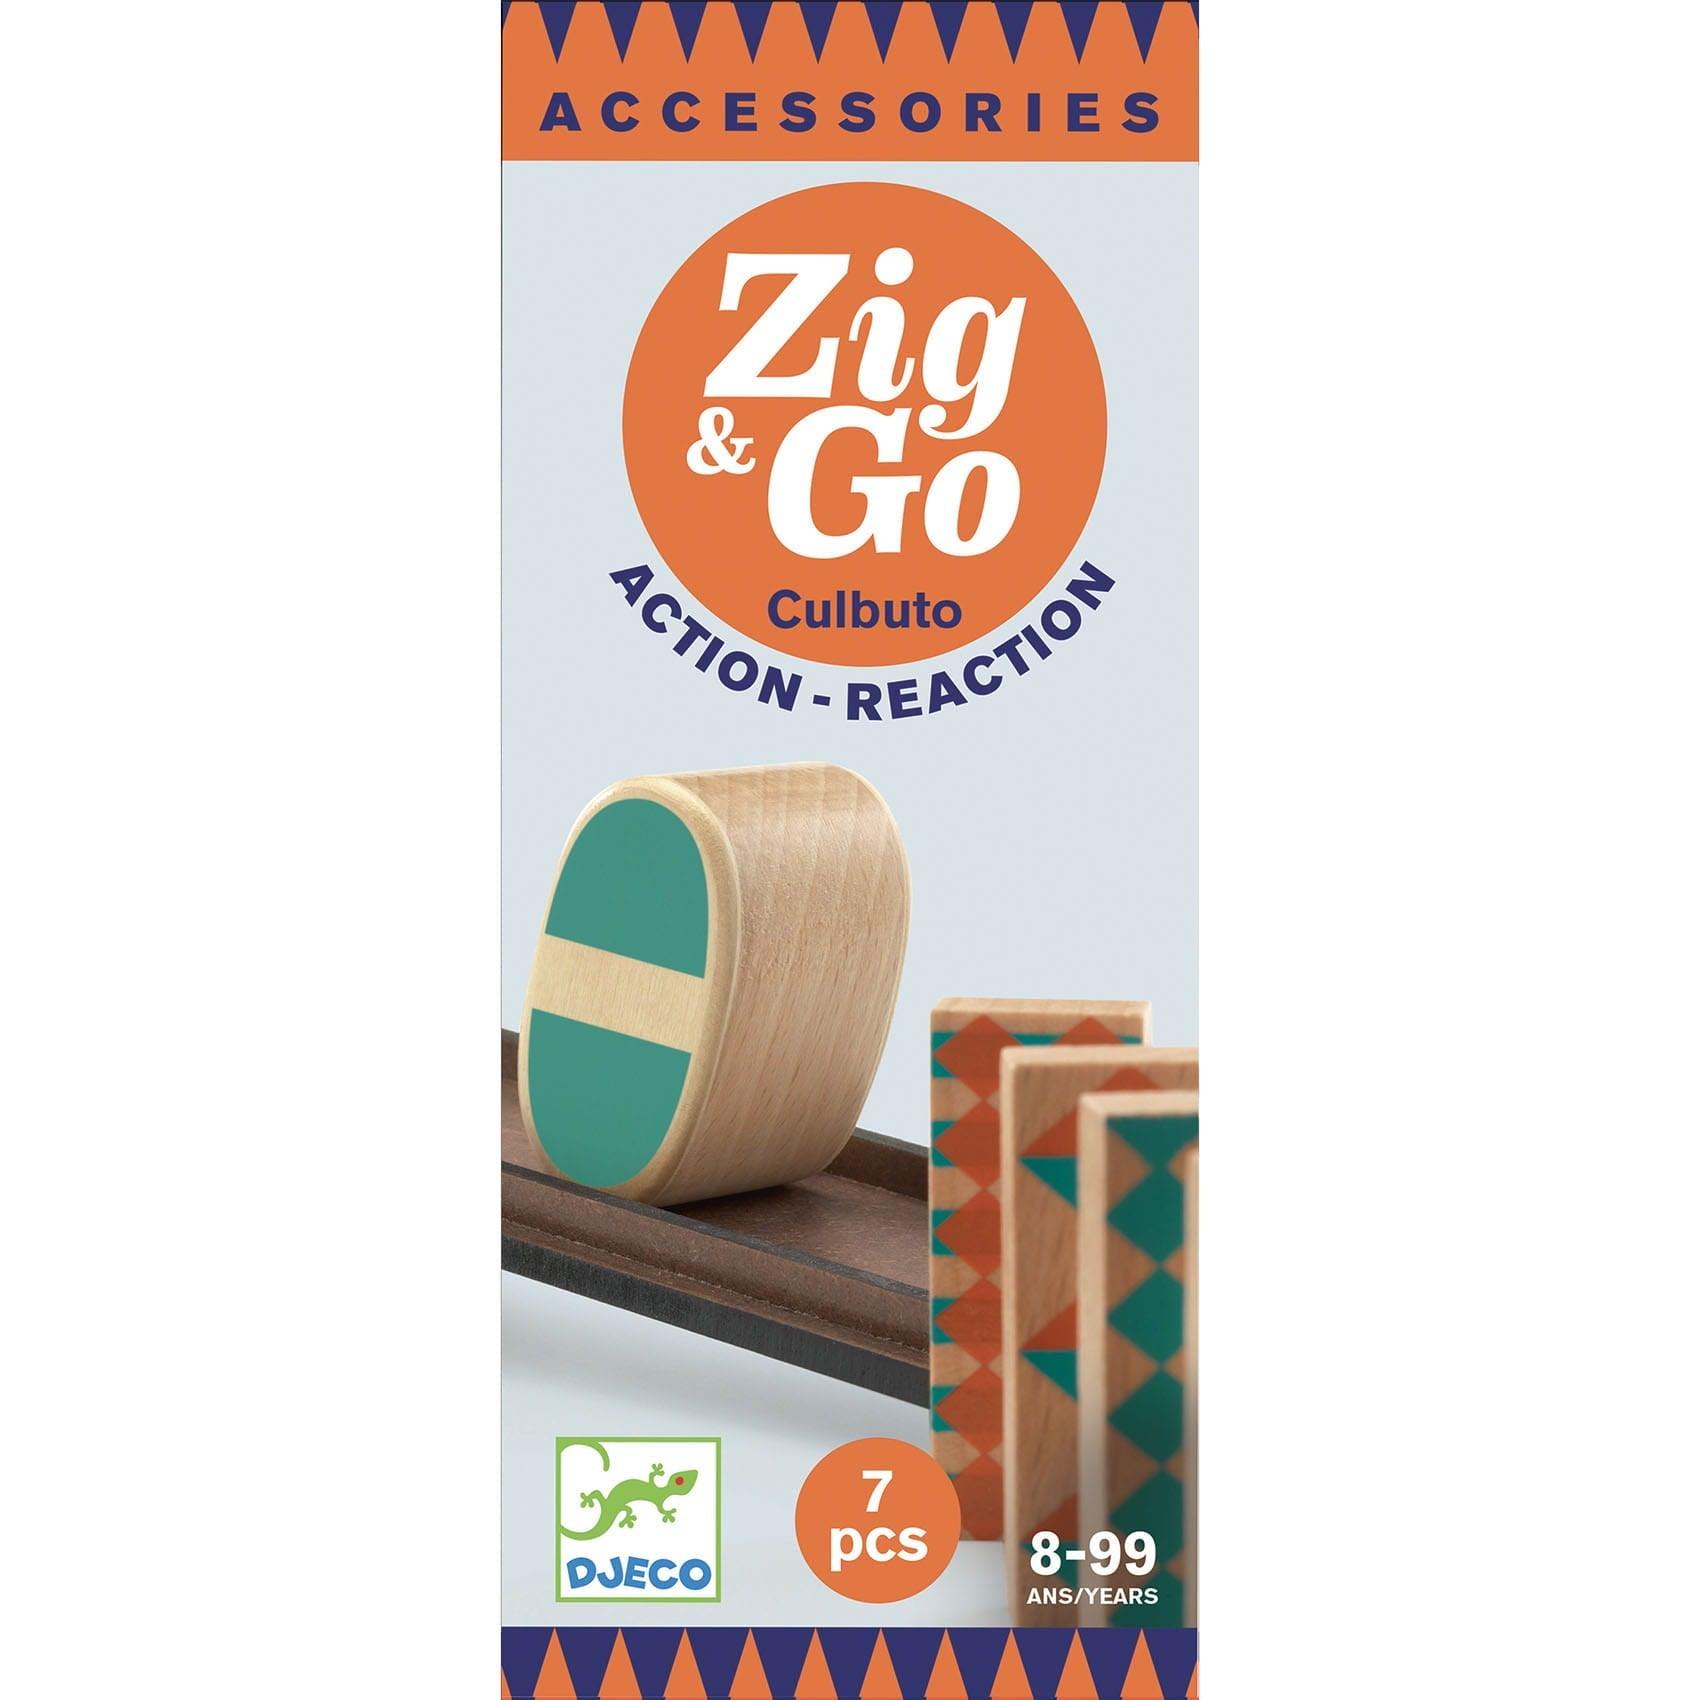 DJECO: ZIG & GO egymásra helyezett pálya 7 EL.